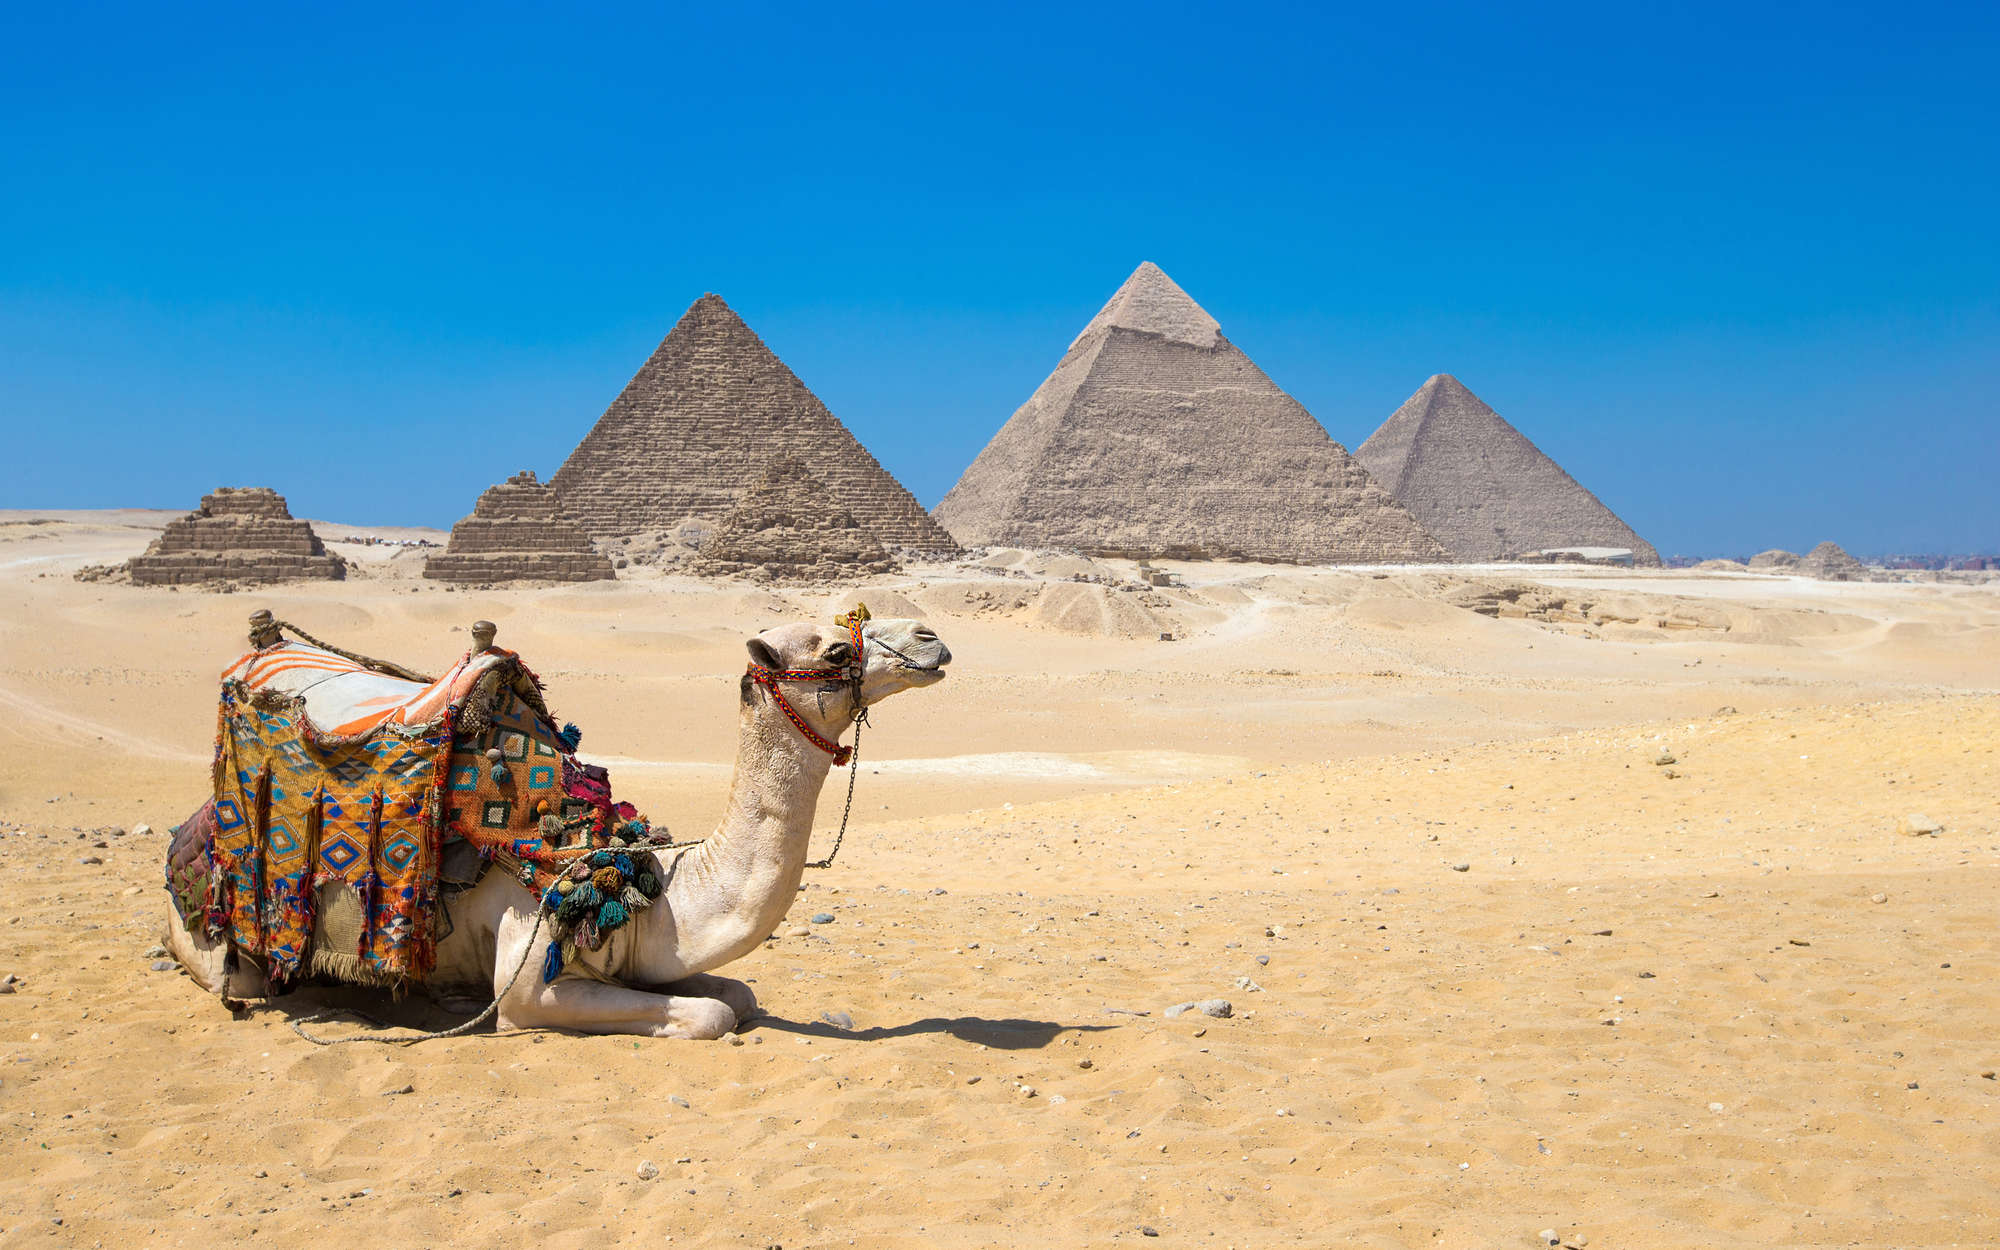             papiers peints à impression numérique Pyramides de Gizeh avec chameau - intissé lisse mat
        